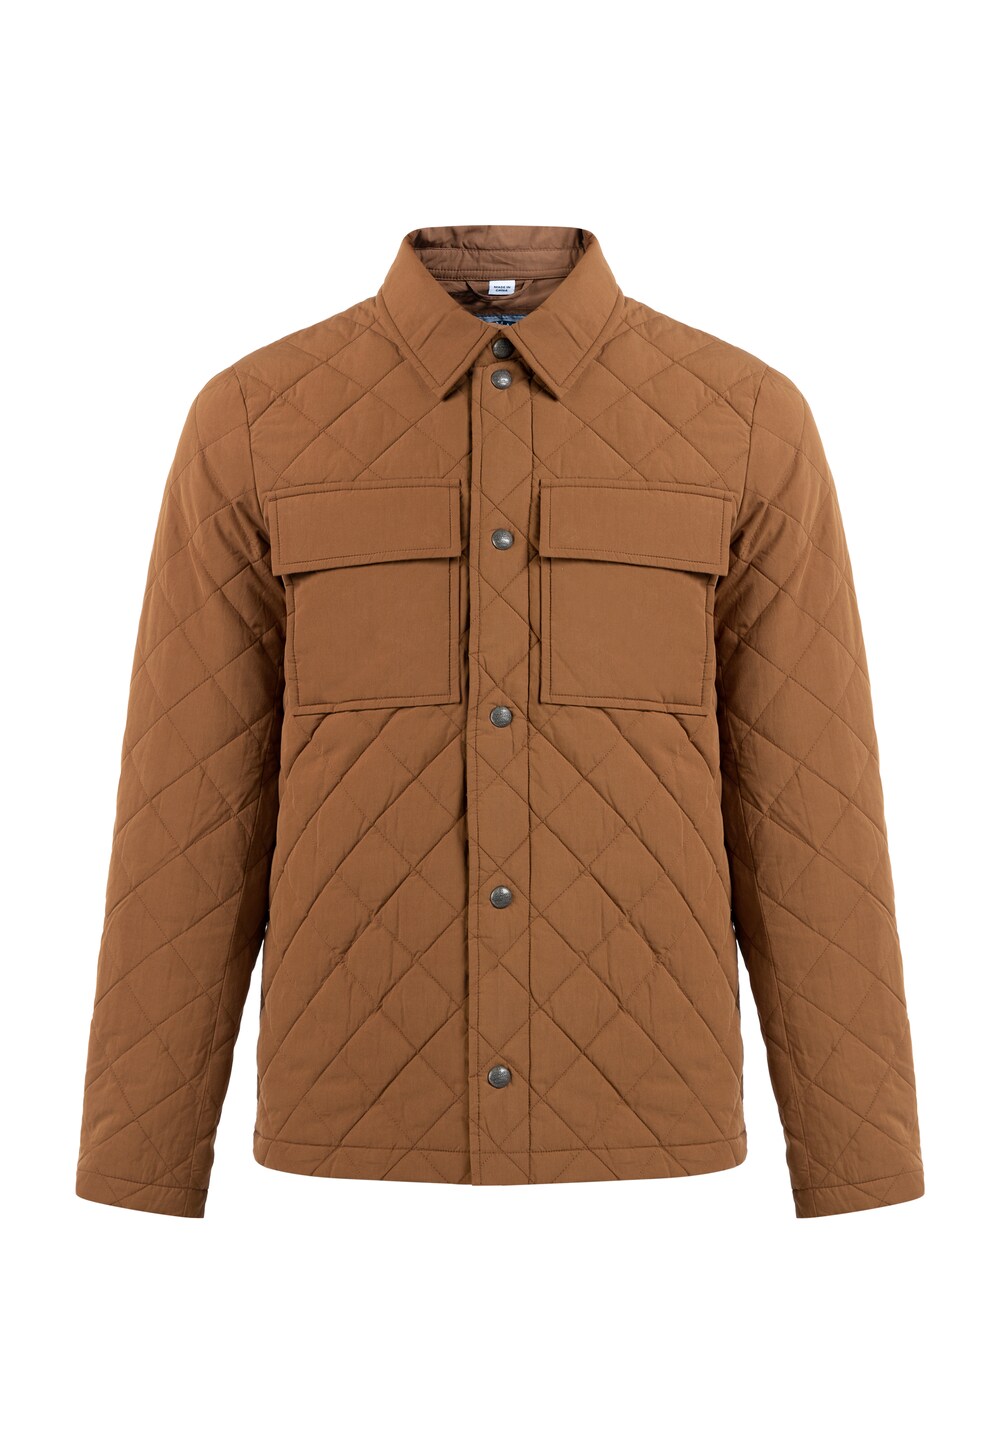 Межсезонная куртка DreiMaster Vintage, коричневый межсезонная куртка dreimaster vintage ржаво красный